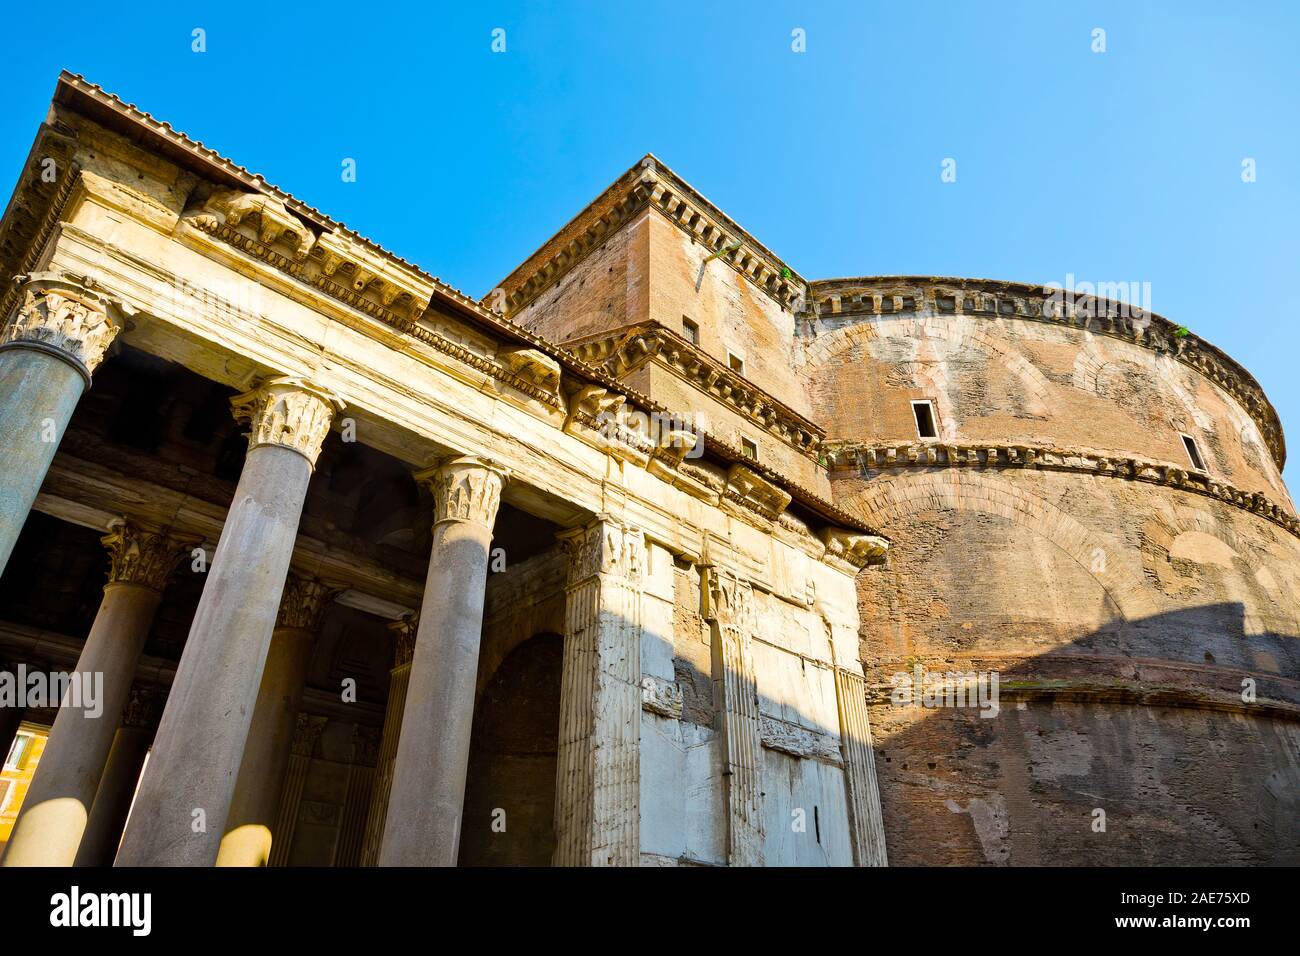 Vue latérale sur la construction en brique Panthéon, Rome Italie Banque D'Images